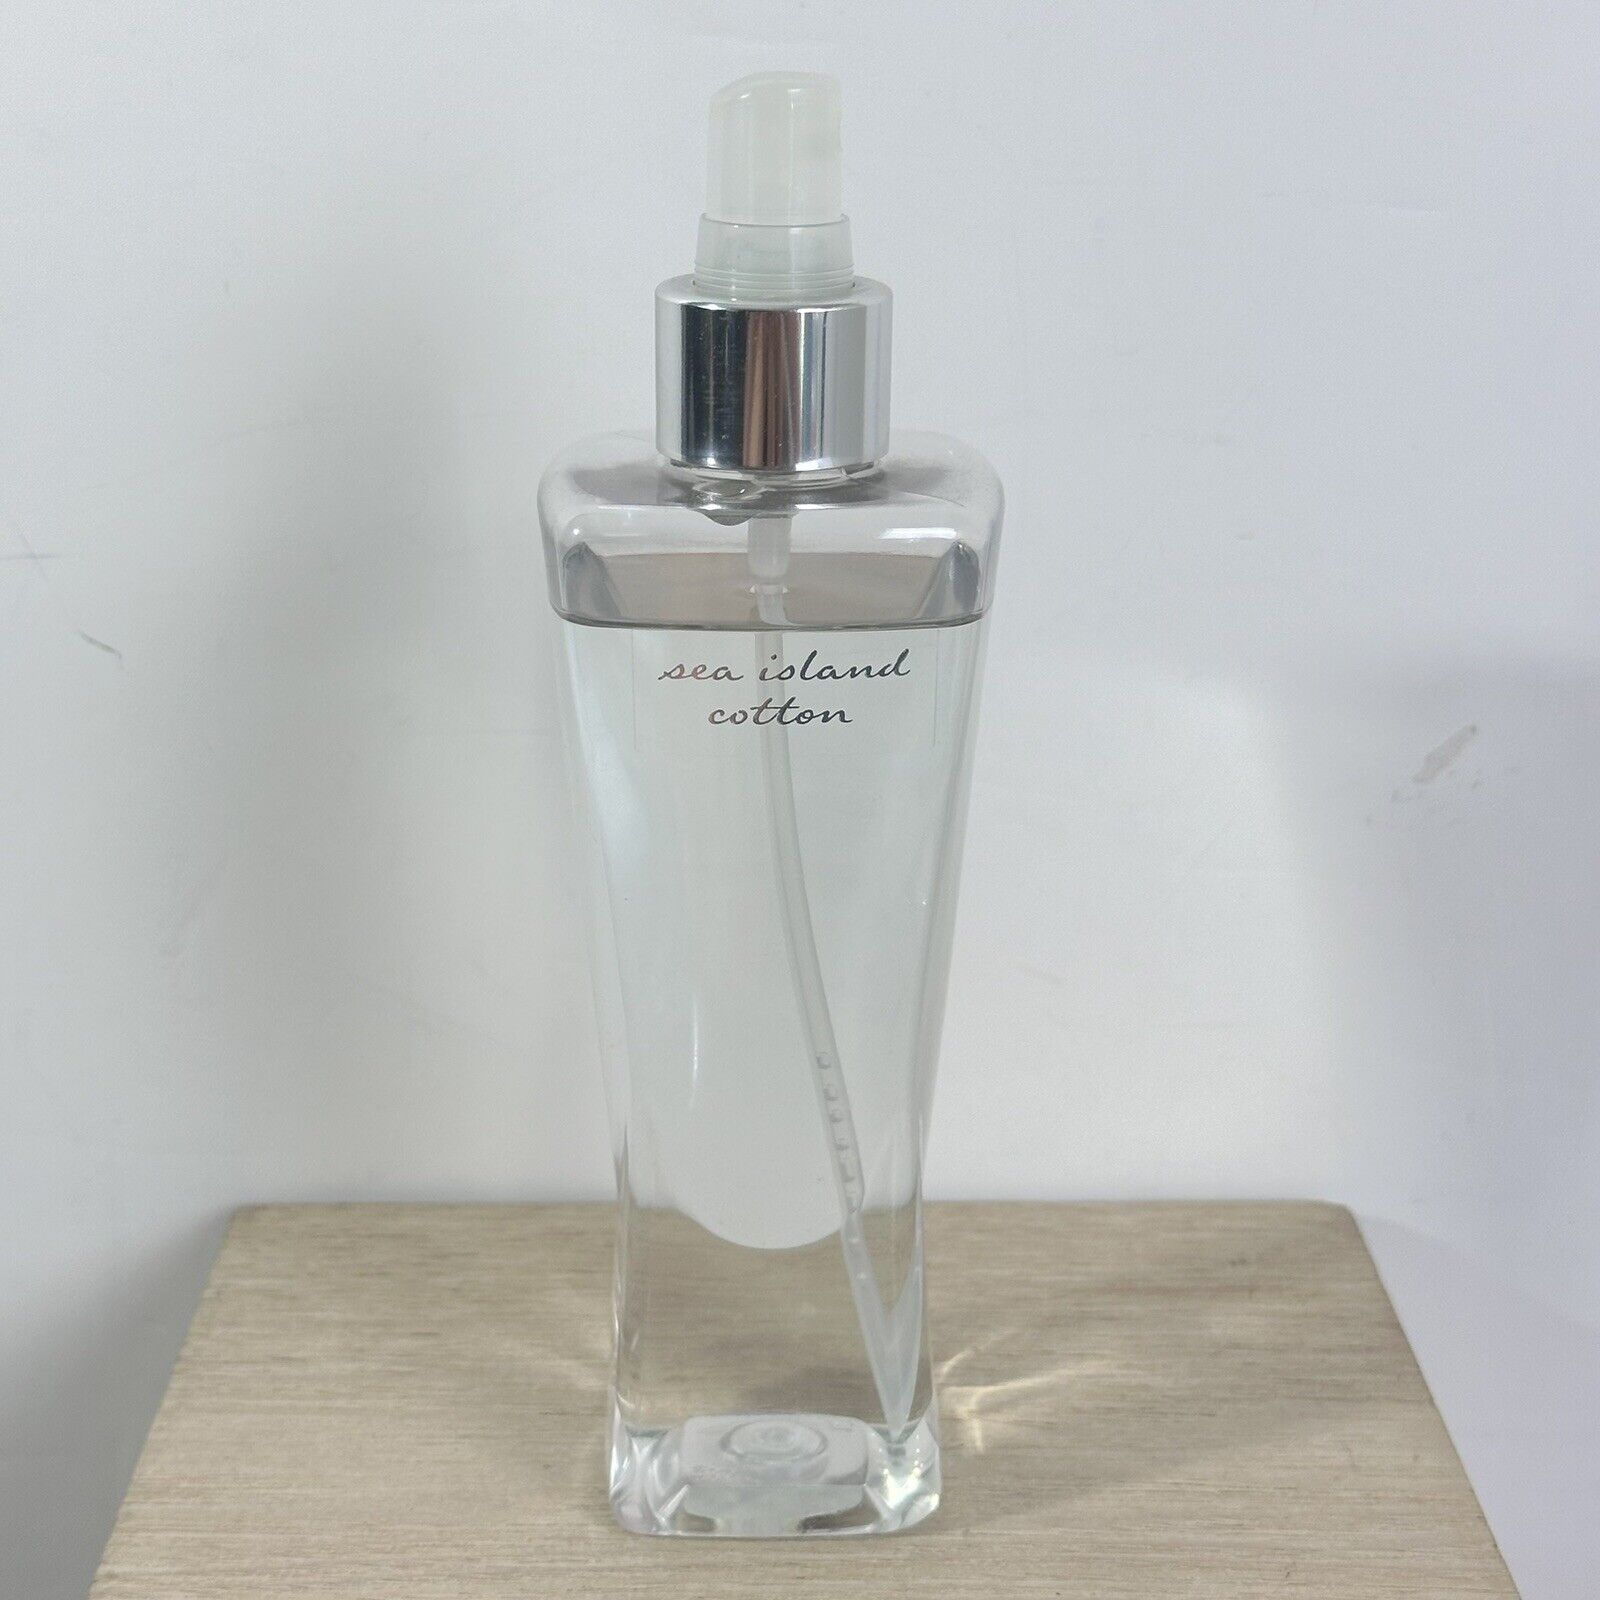 90% - Bath and Body Works SEA ISLAND COTTON Fragrance Mist 8oz Original Formula